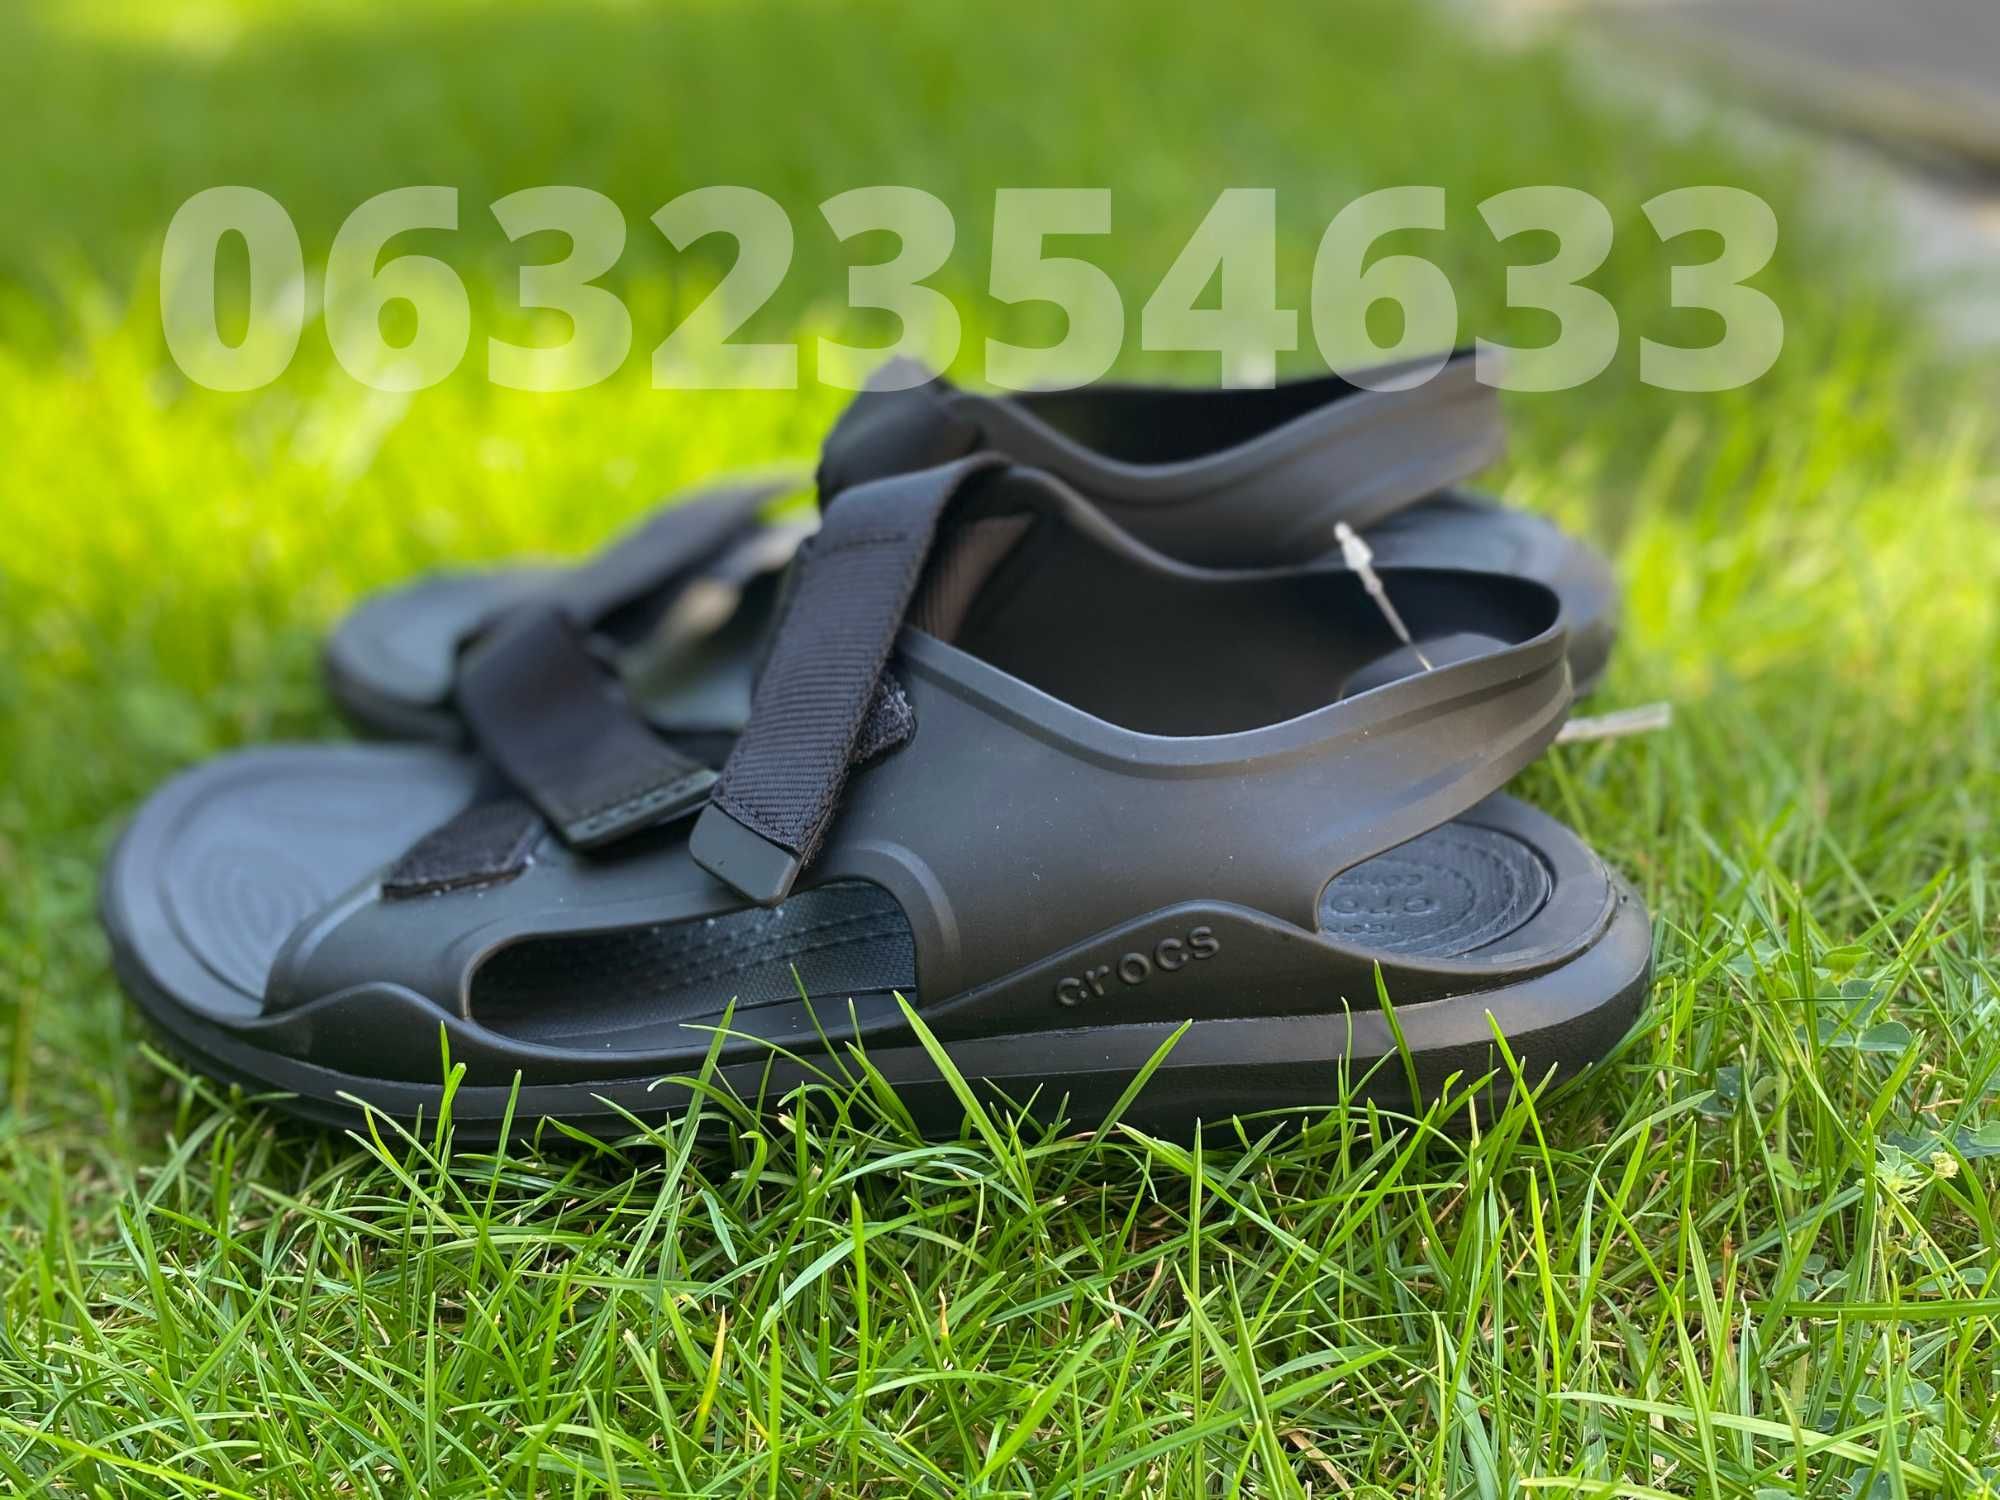 Мужские сандалии на лето мягкие Crocs Sandal Man Swiftwater River